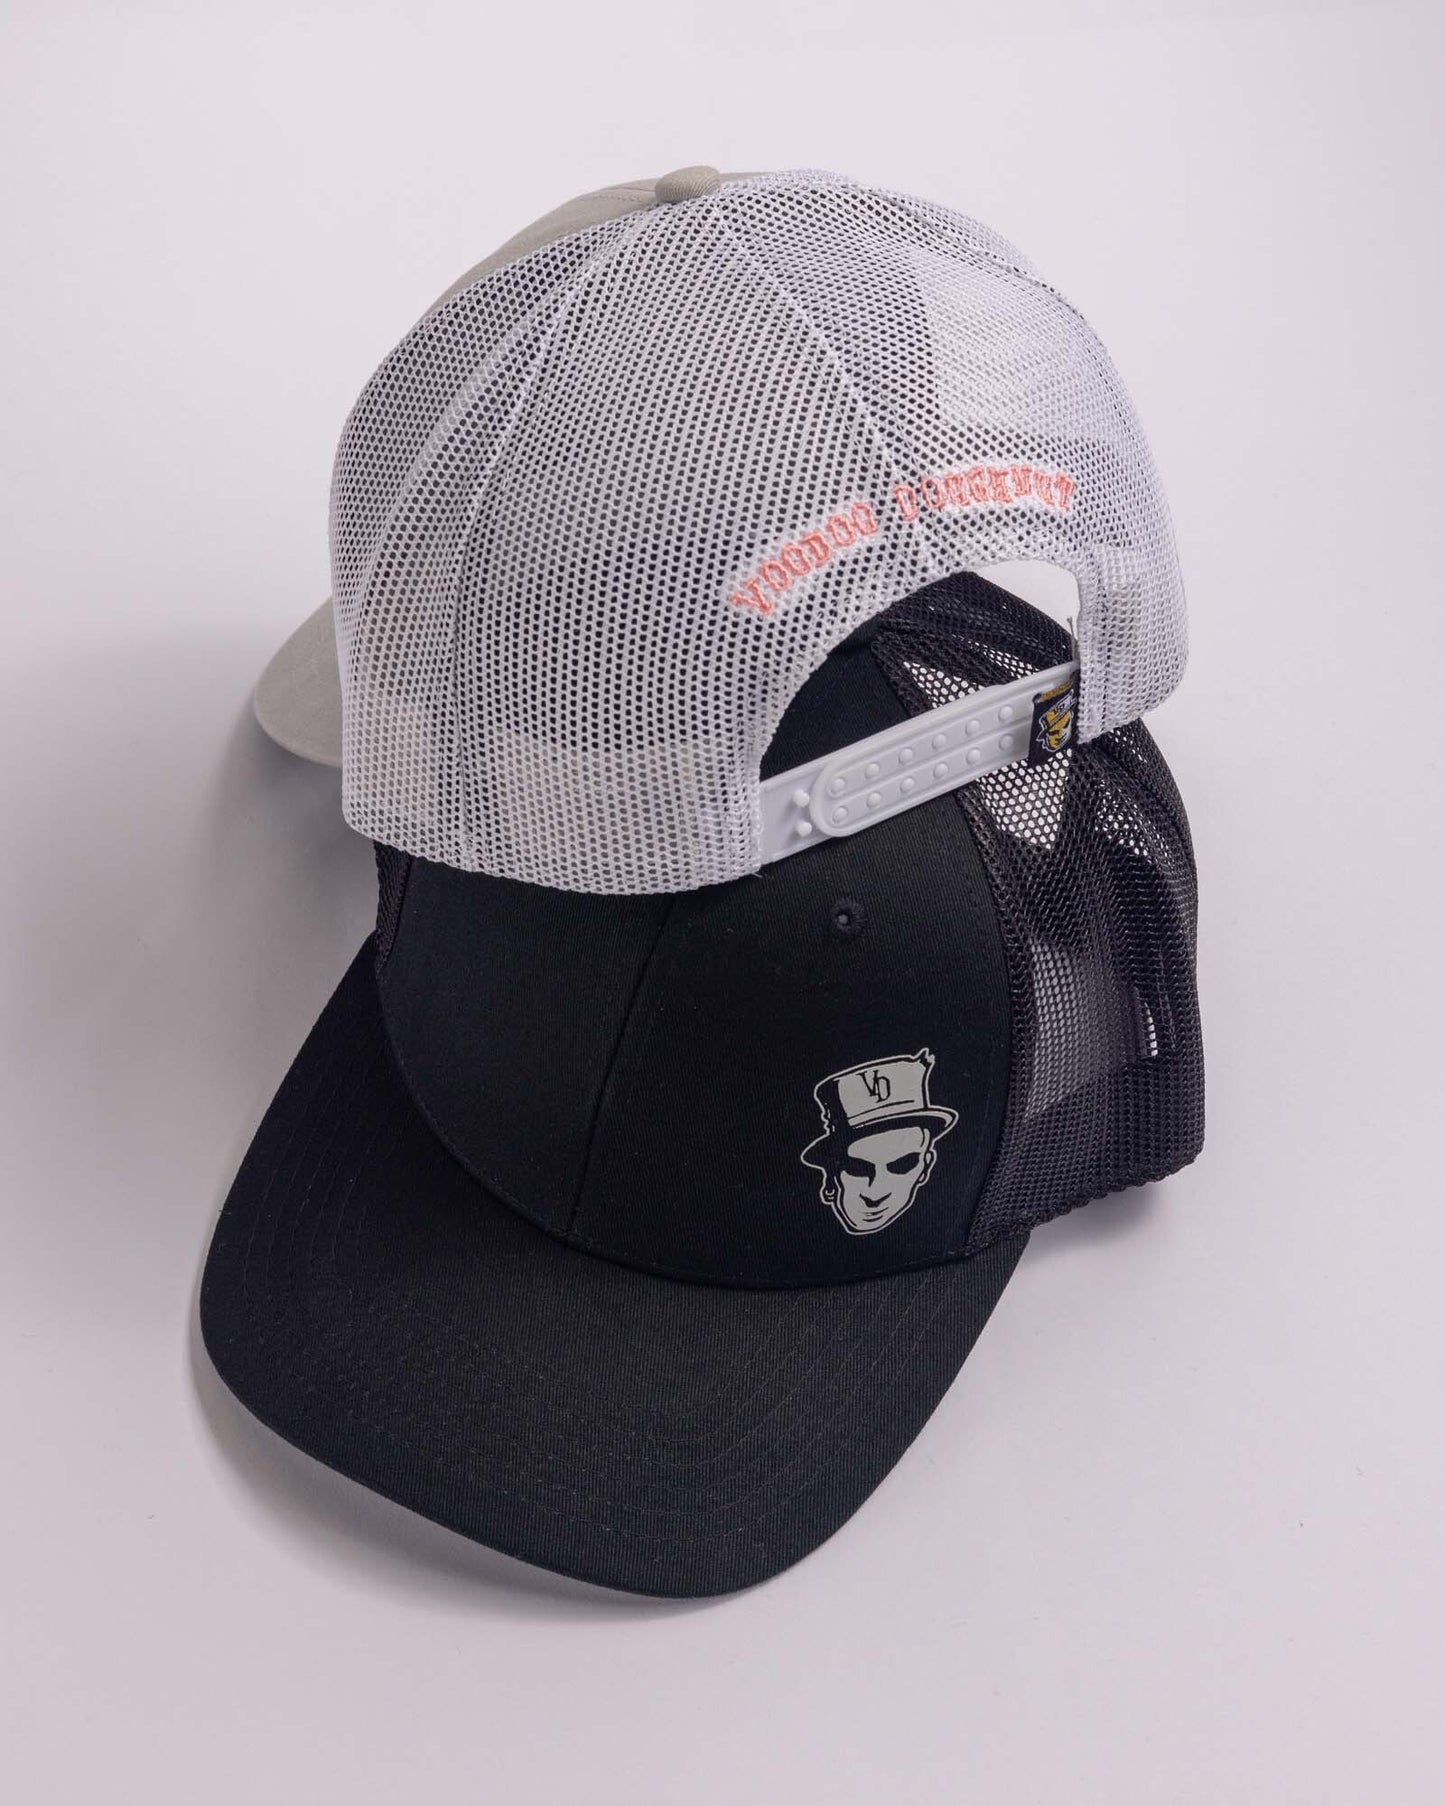 grey trucker cap and black trucker cap